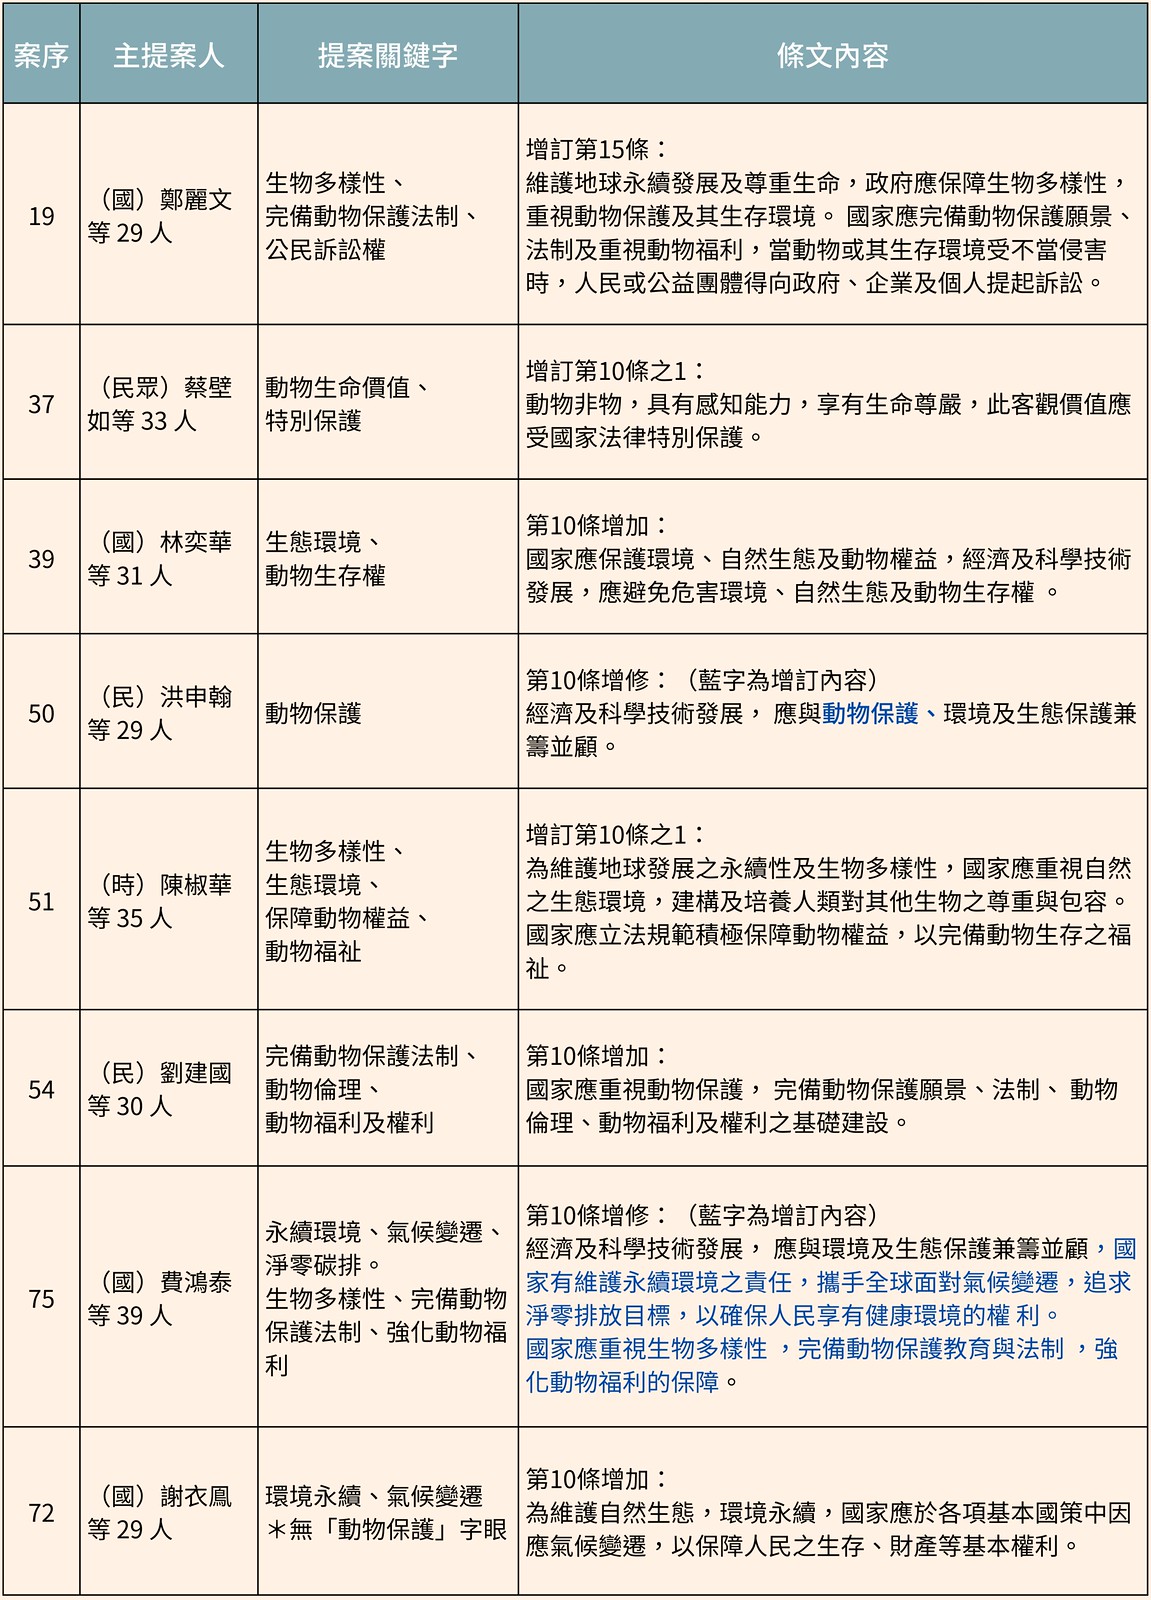 動保入憲提案版本比較。資料來源：台灣動物社會研究會。製表：鄭雅云。